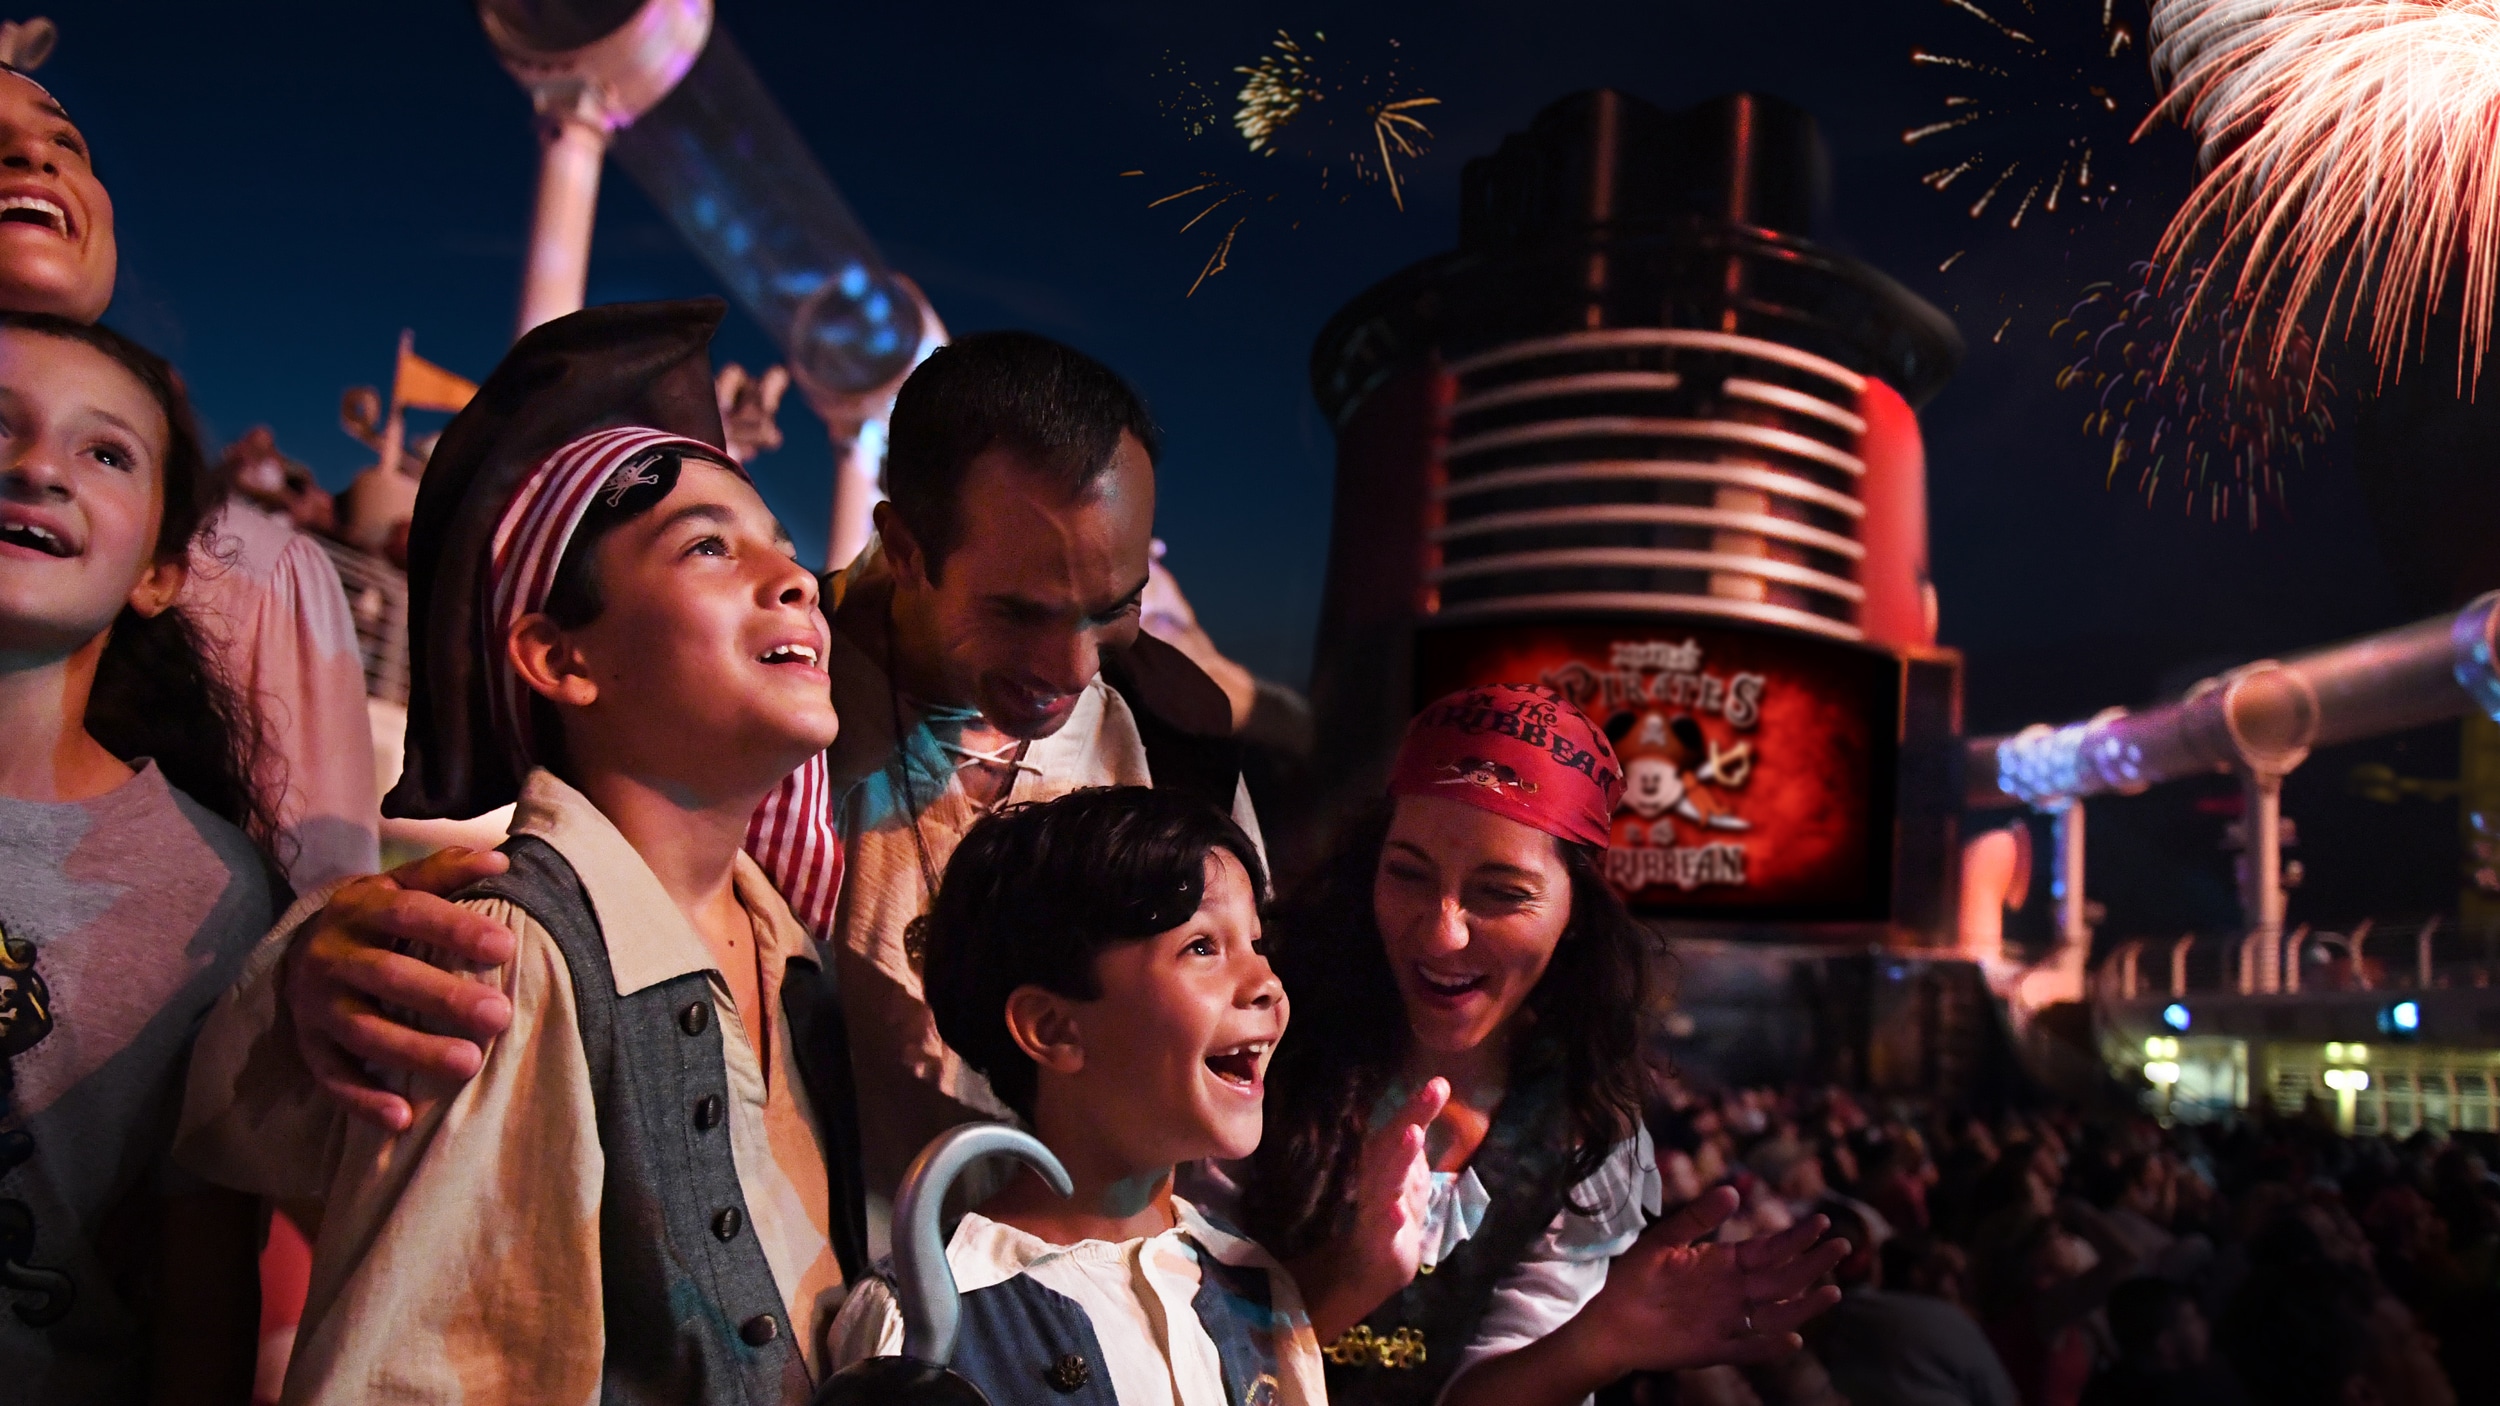 Vestidos de piratas, una familia se maravilla ante los fuegos artificiales durante una fiesta en cubierta de un crucero de Disney Cruise Line